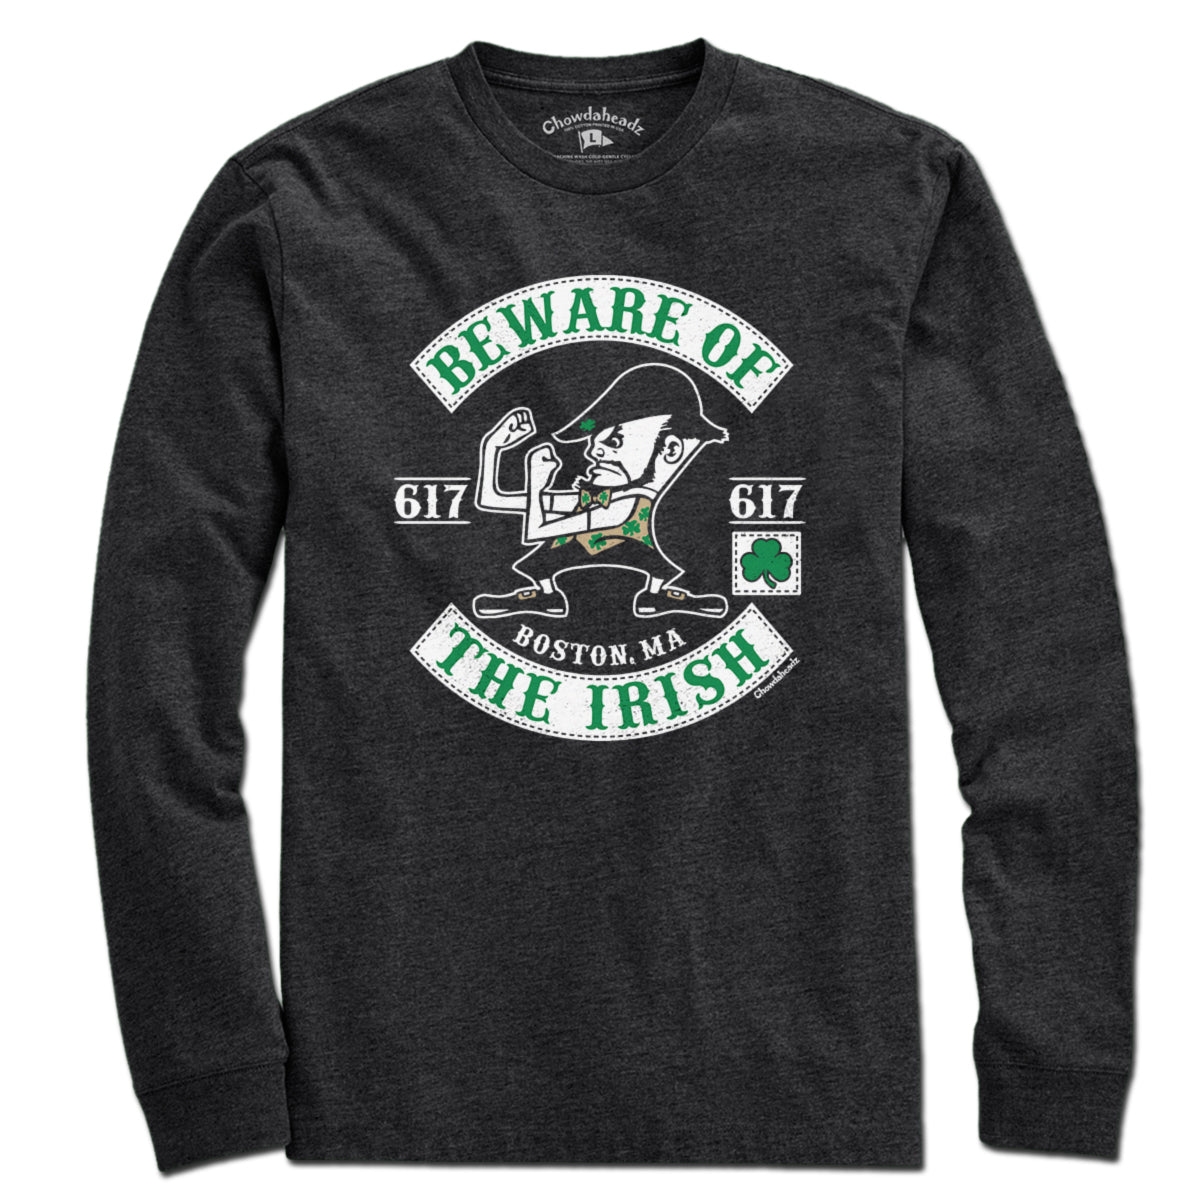 Beware Of The Irish T-Shirt - Chowdaheadz